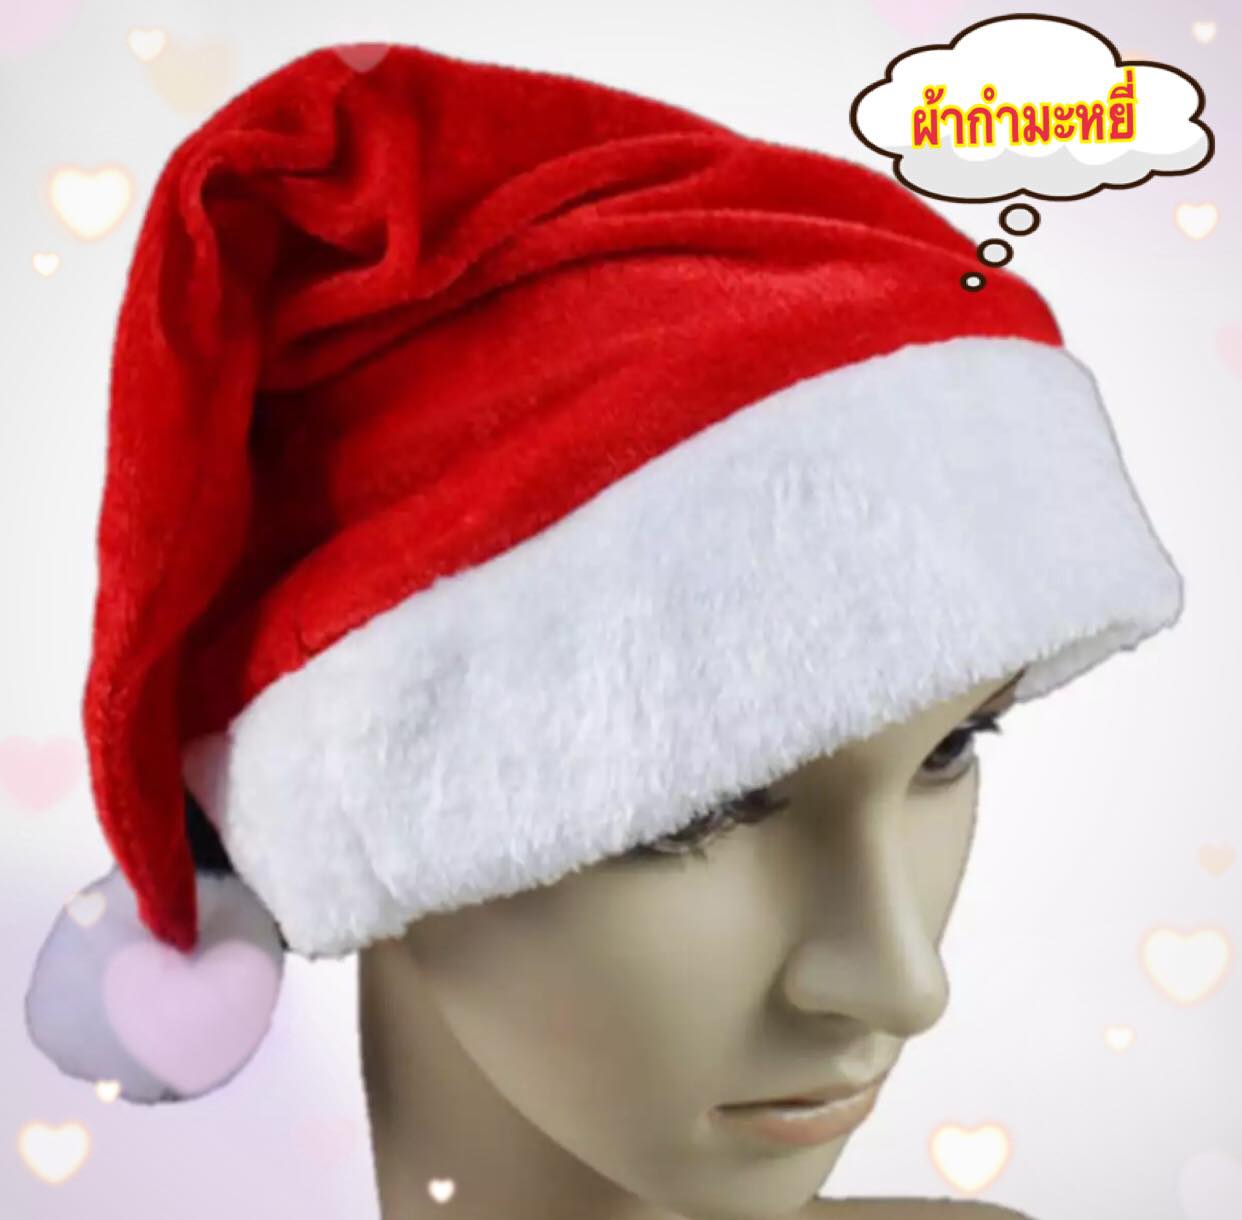 ** พร้อมส่งจ้า สวย ถูก ** หมวกแฟนซี หมวกซานต้า หมวกปาร์ตี หมวกคริสมาส ชุดซานต้า สามารถใส่ได้ทั้งเด็ก ทั้งผู้ใหญ่